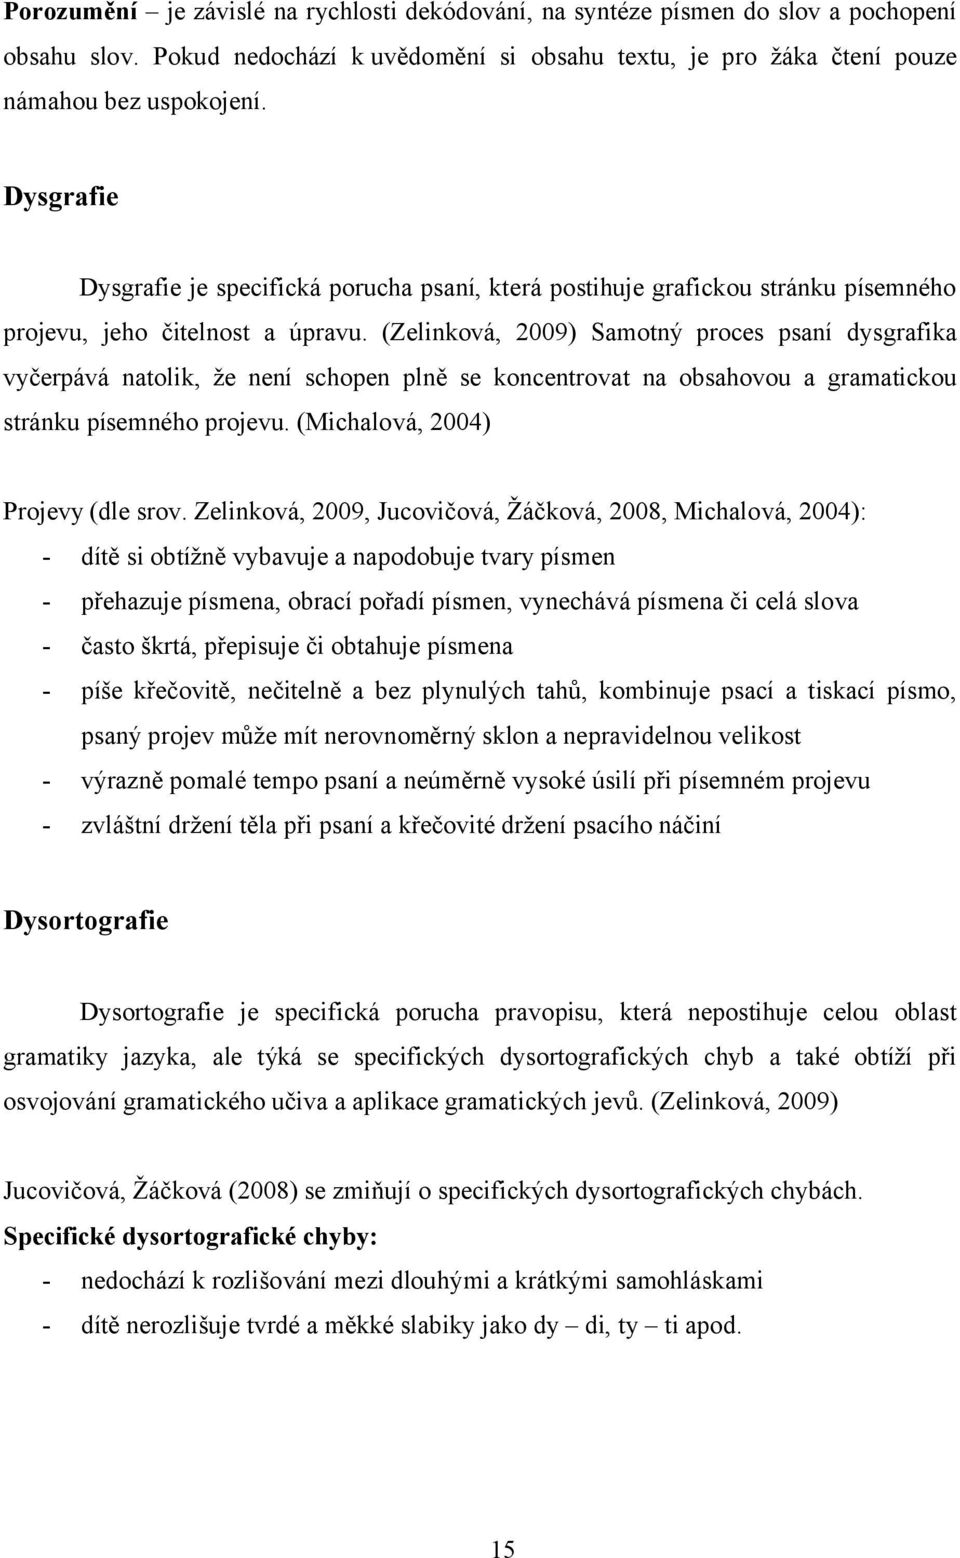 (Zelinková, 2009) Samotný proces psaní dysgrafika vyčerpává natolik, že není schopen plně se koncentrovat na obsahovou a gramatickou stránku písemného projevu. (Michalová, 2004) Projevy (dle srov.